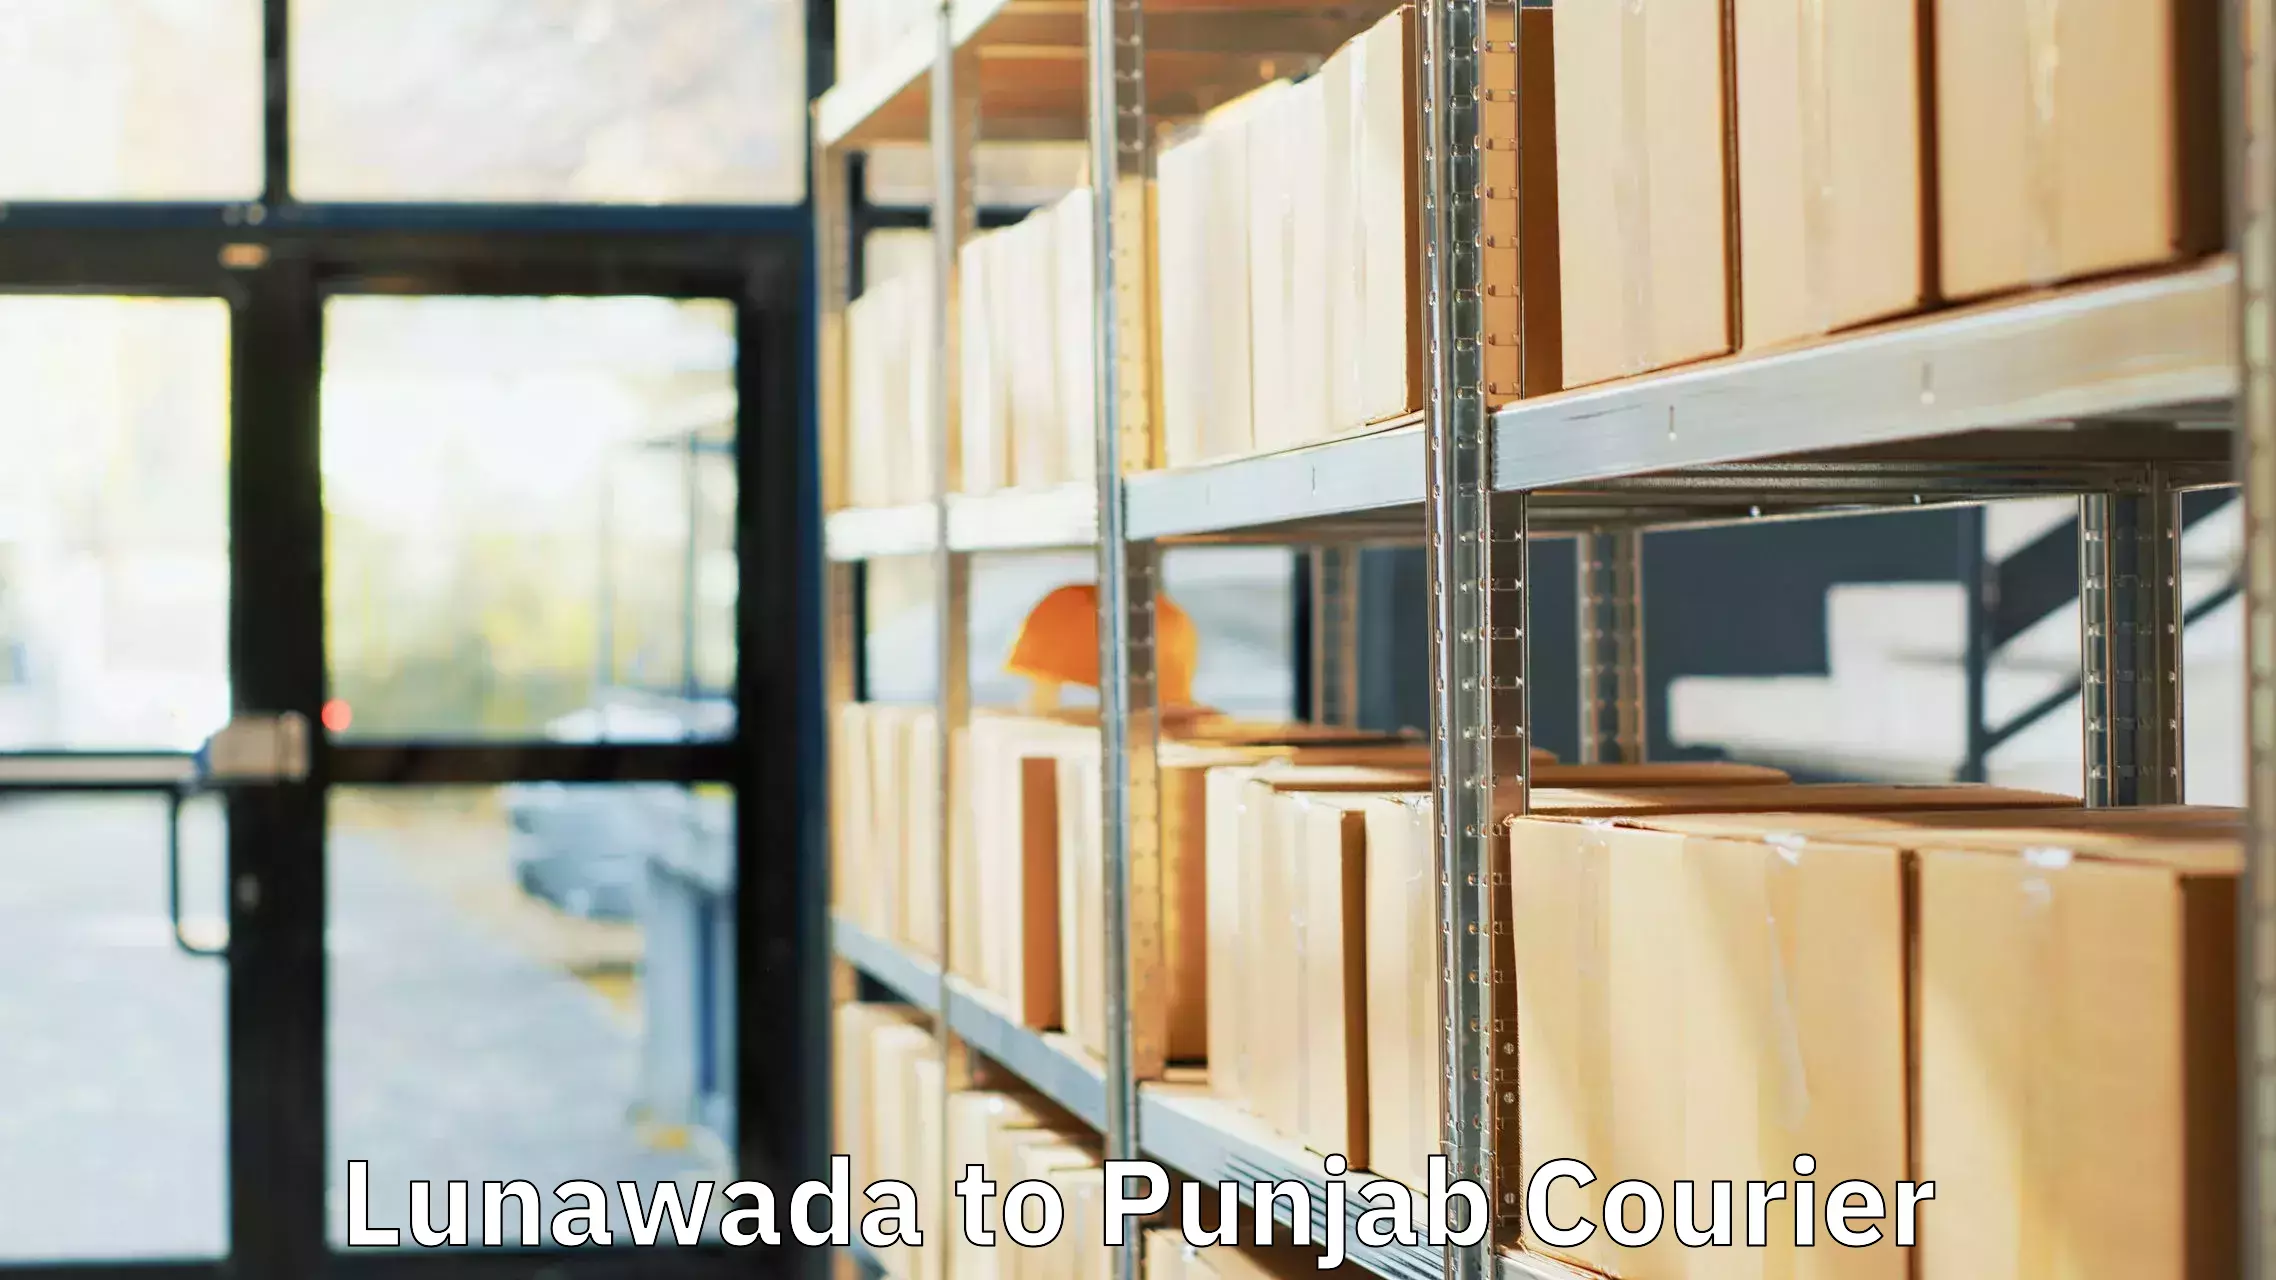 Luggage shipment tracking Lunawada to Central University of Punjab Bathinda